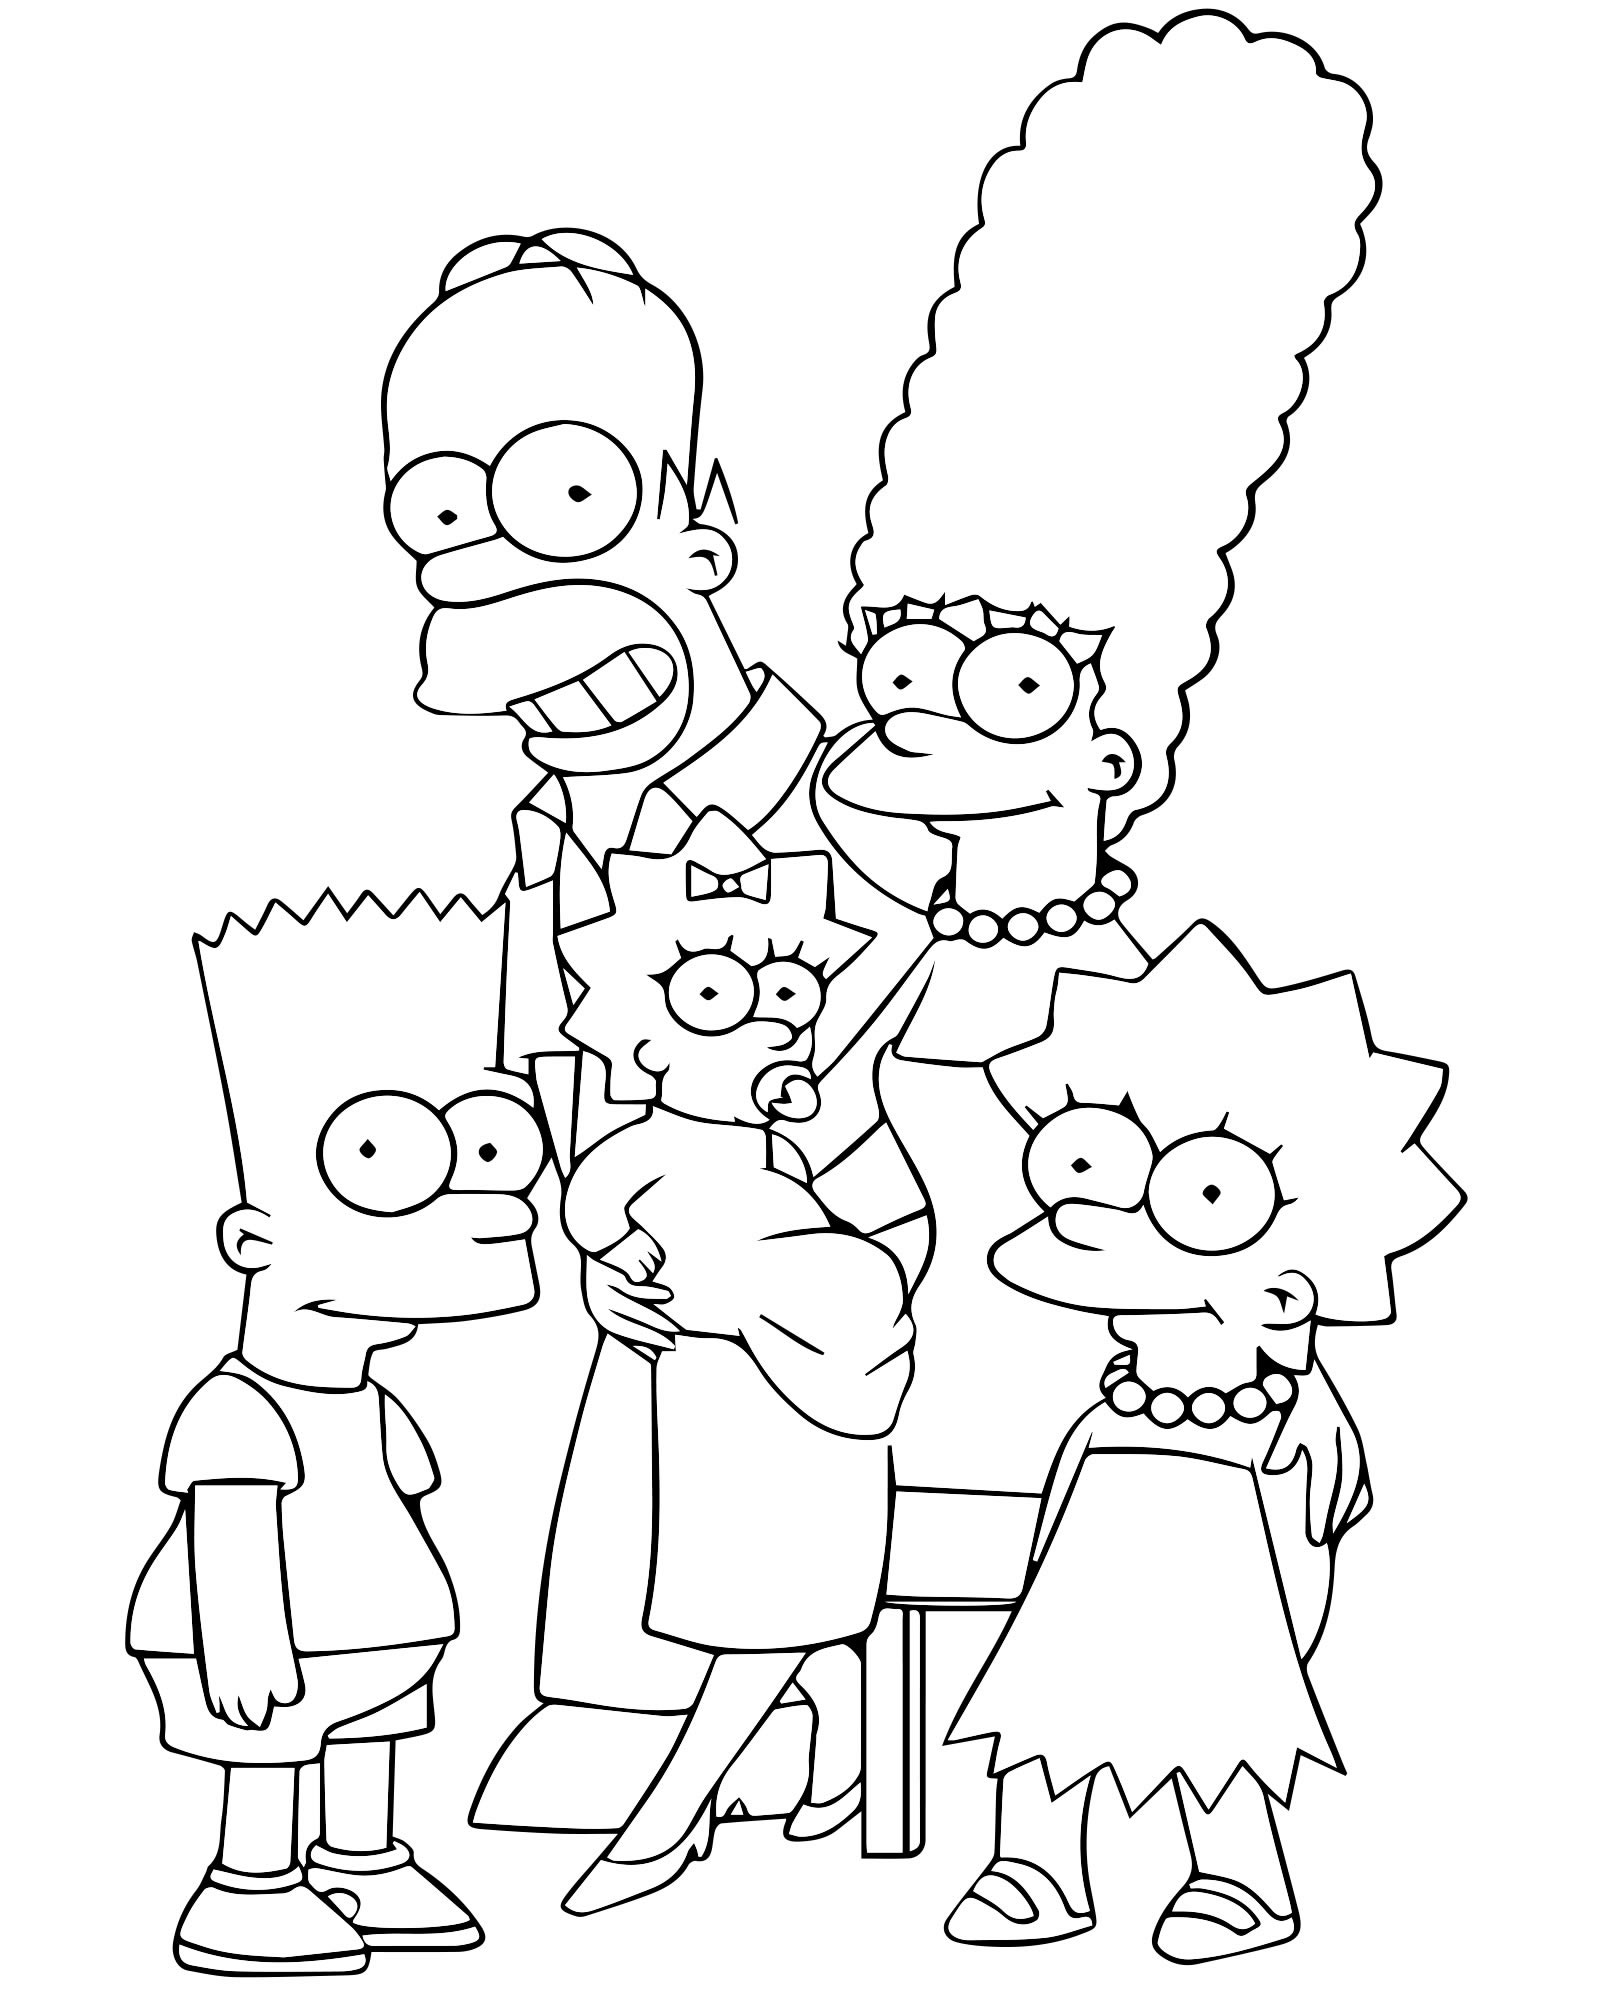 Как нарисовать Гомера Симпсона поэтапно 4 урока